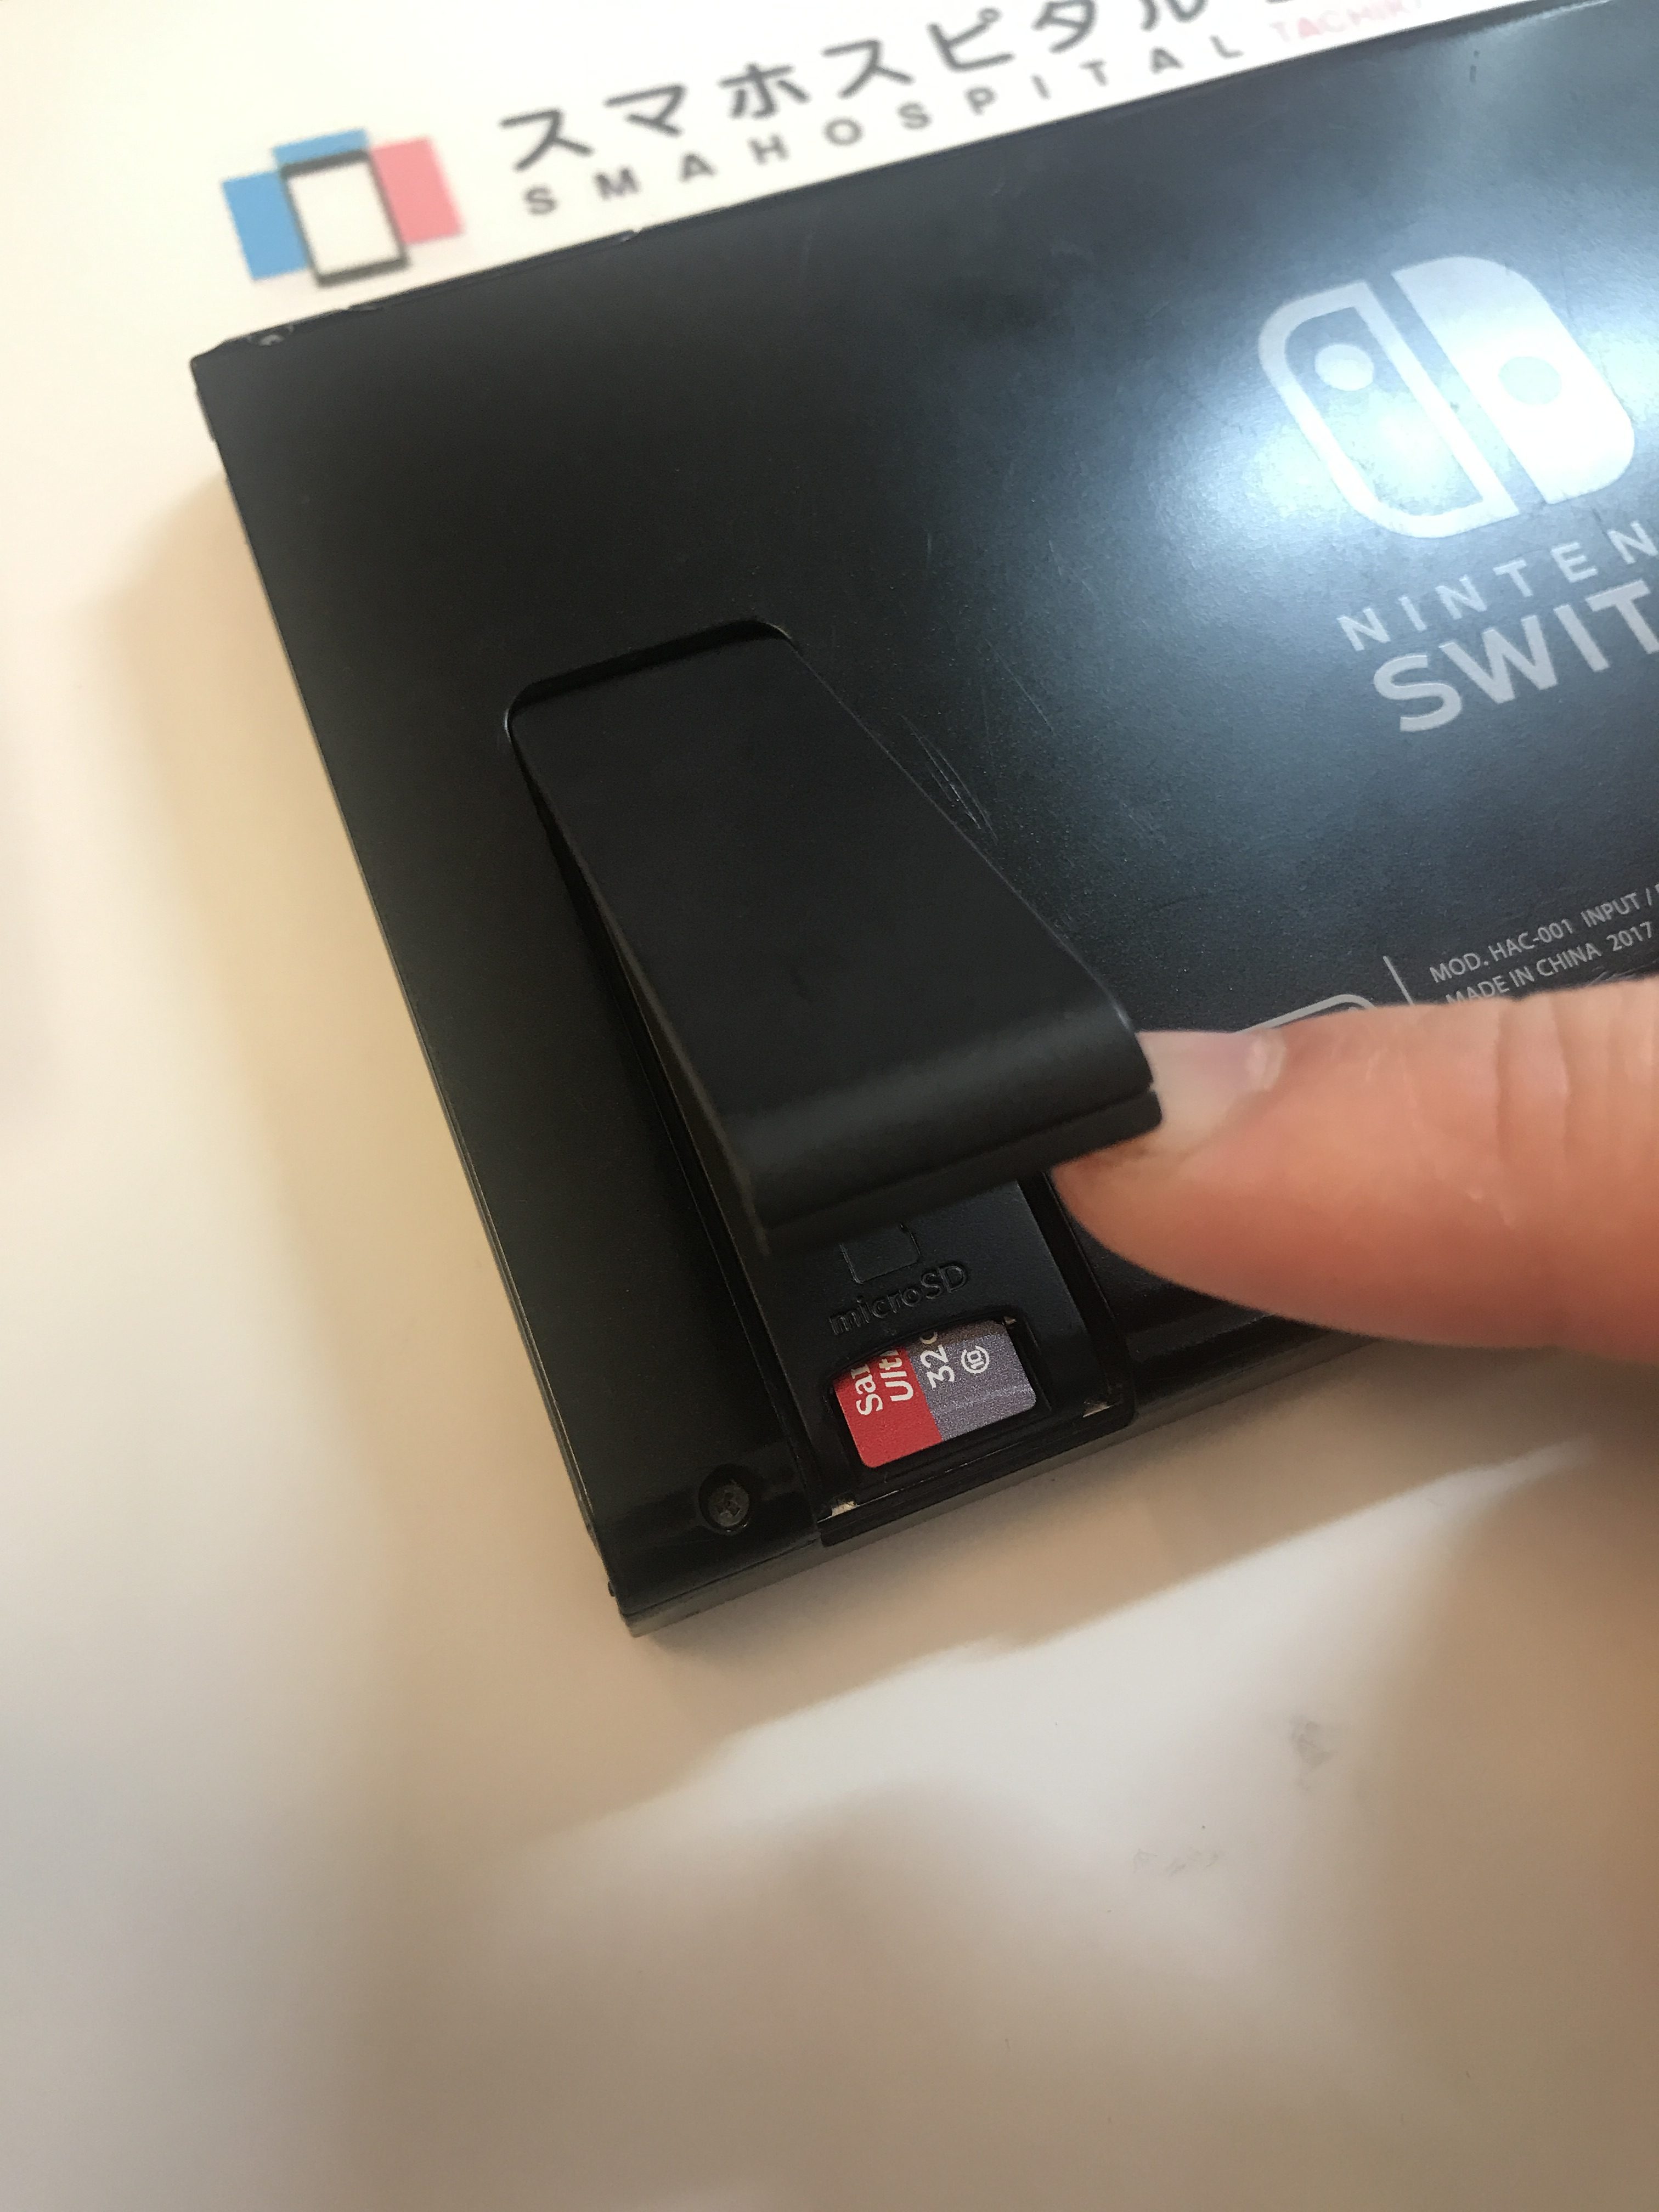 【任天堂 Switch】microSDカードがはいらない？ 奥まで差し込んでも戻ってきてしまう… | Switch・Nintendo3DS